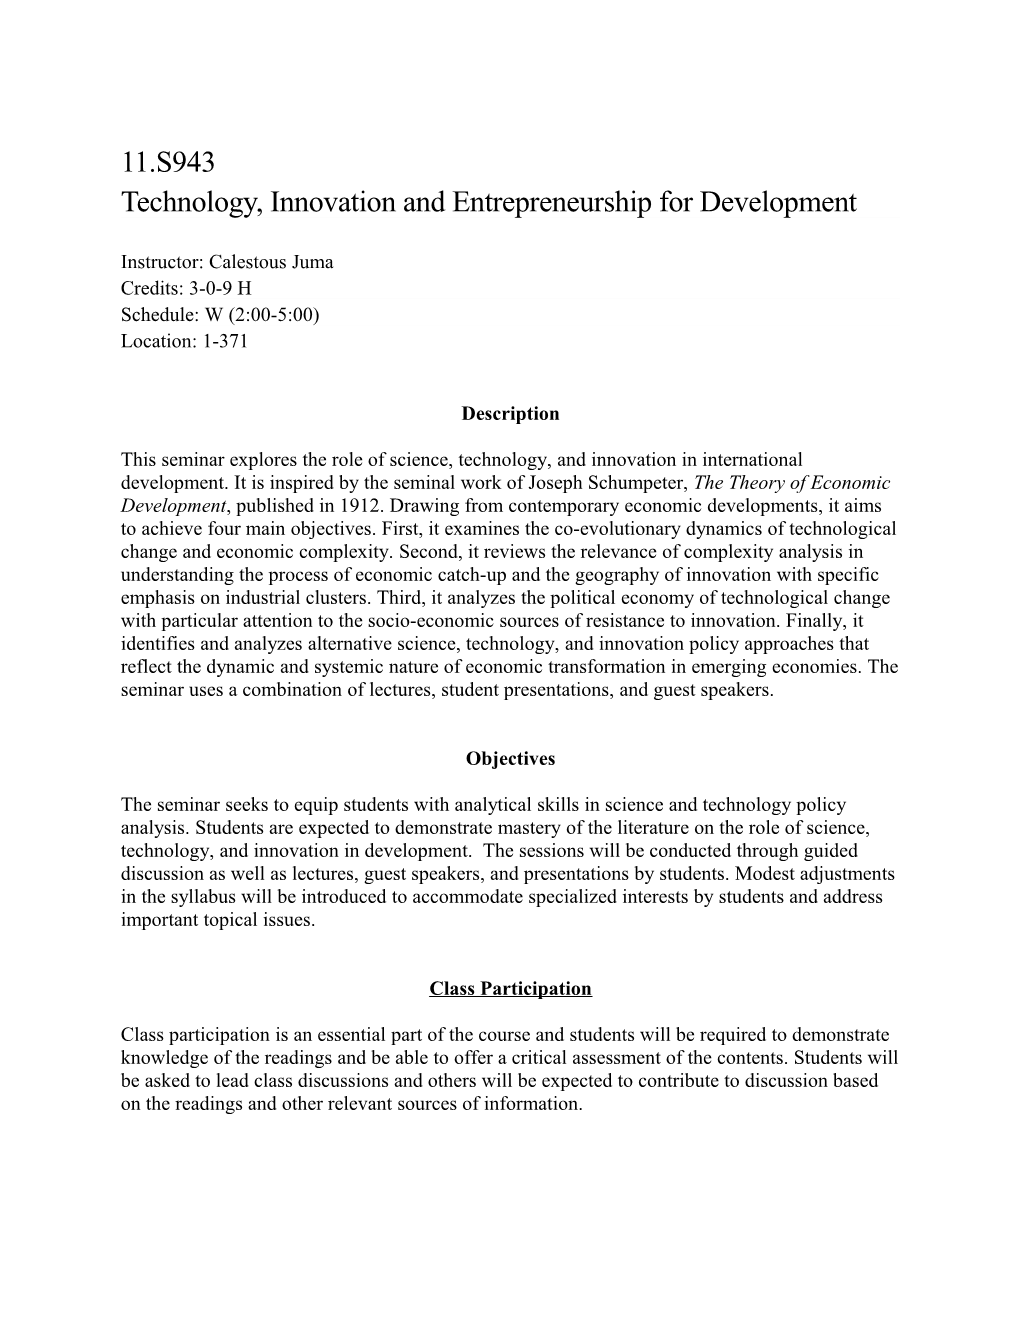 Technology, Innovation and Entrepreneurship for Development